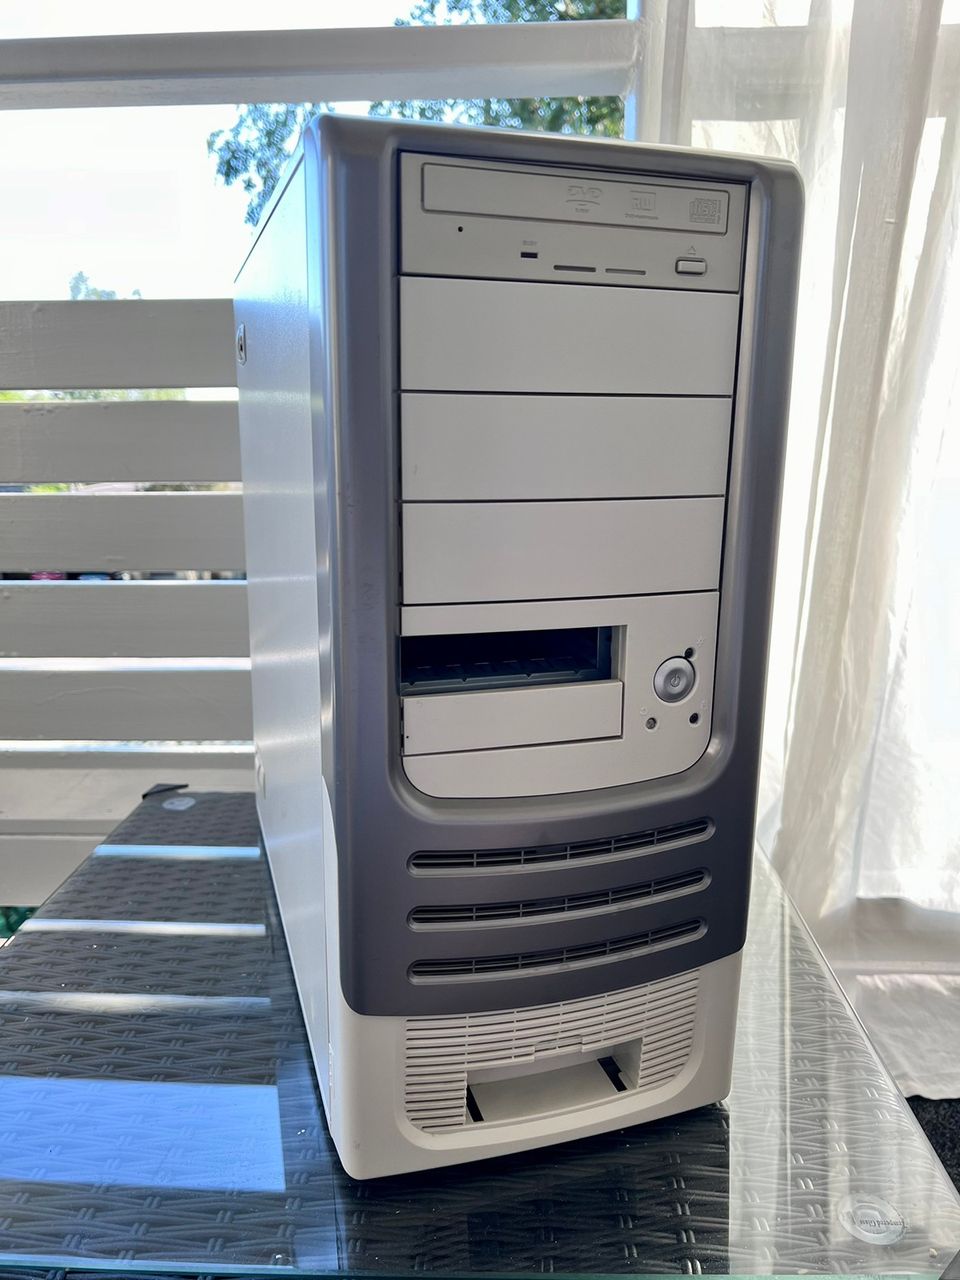 Windows 98 Pentium 4 kone